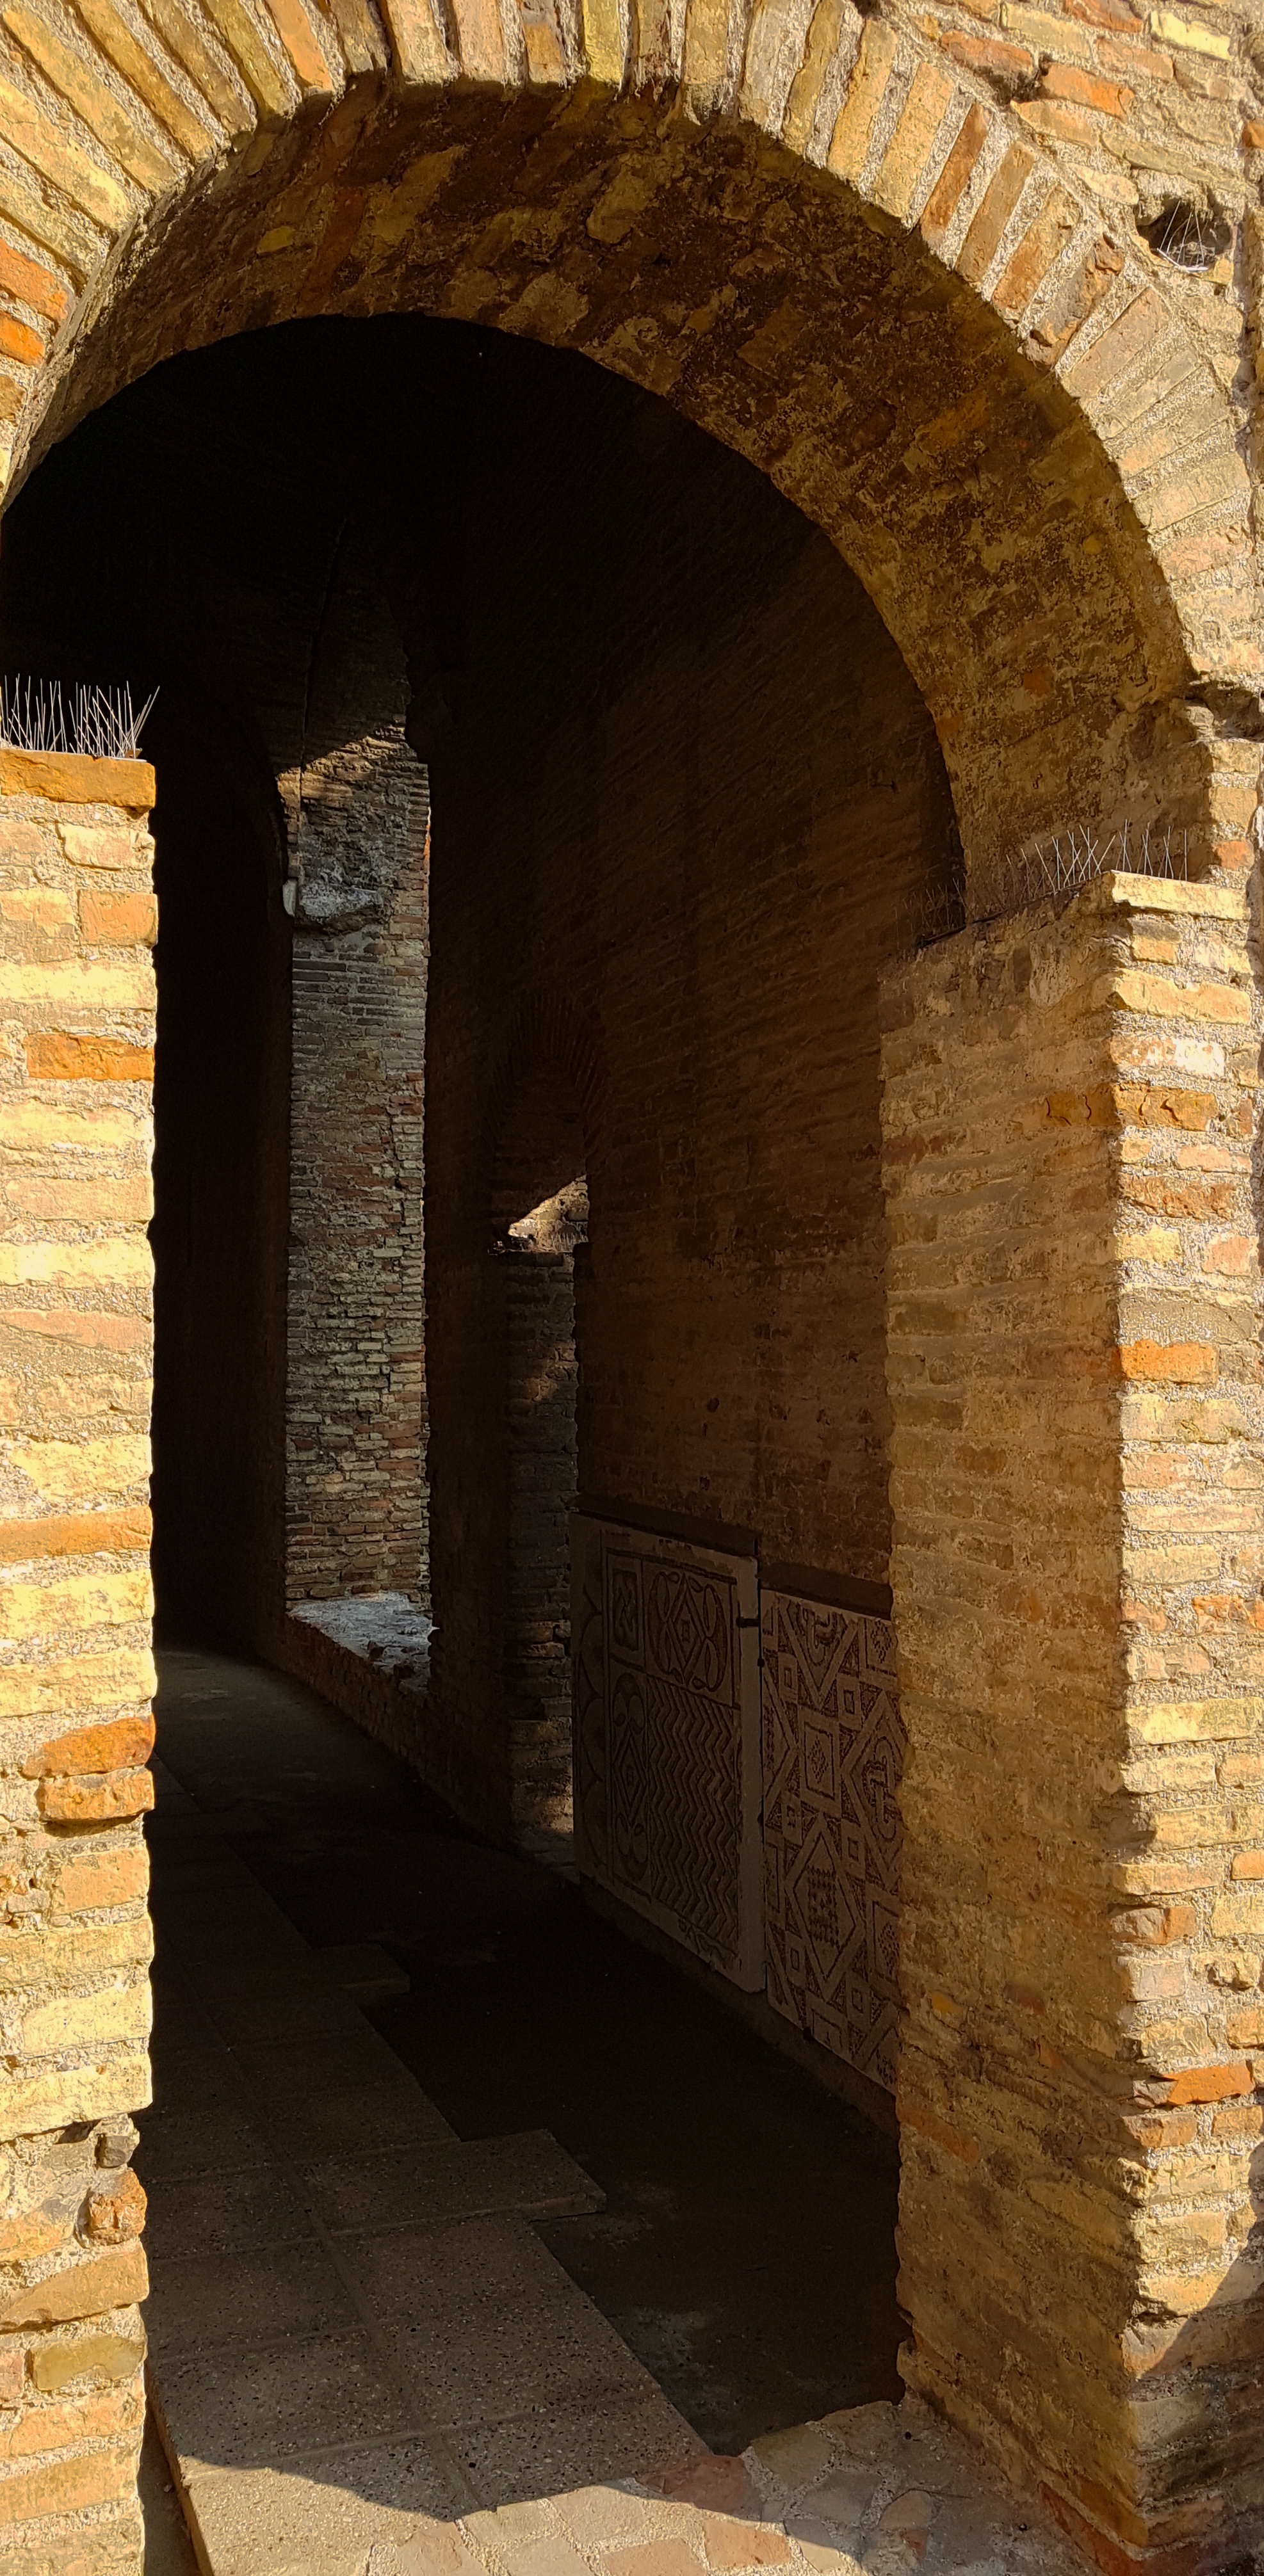 foto: https://upload.wikimedia.org/wikipedia/commons/e/e2/Chiesa_di_San_Salvatore_ad_Chalchis_cosiddetto_Palazzo_di_Teodorico_mosaici_in_vista.jpg